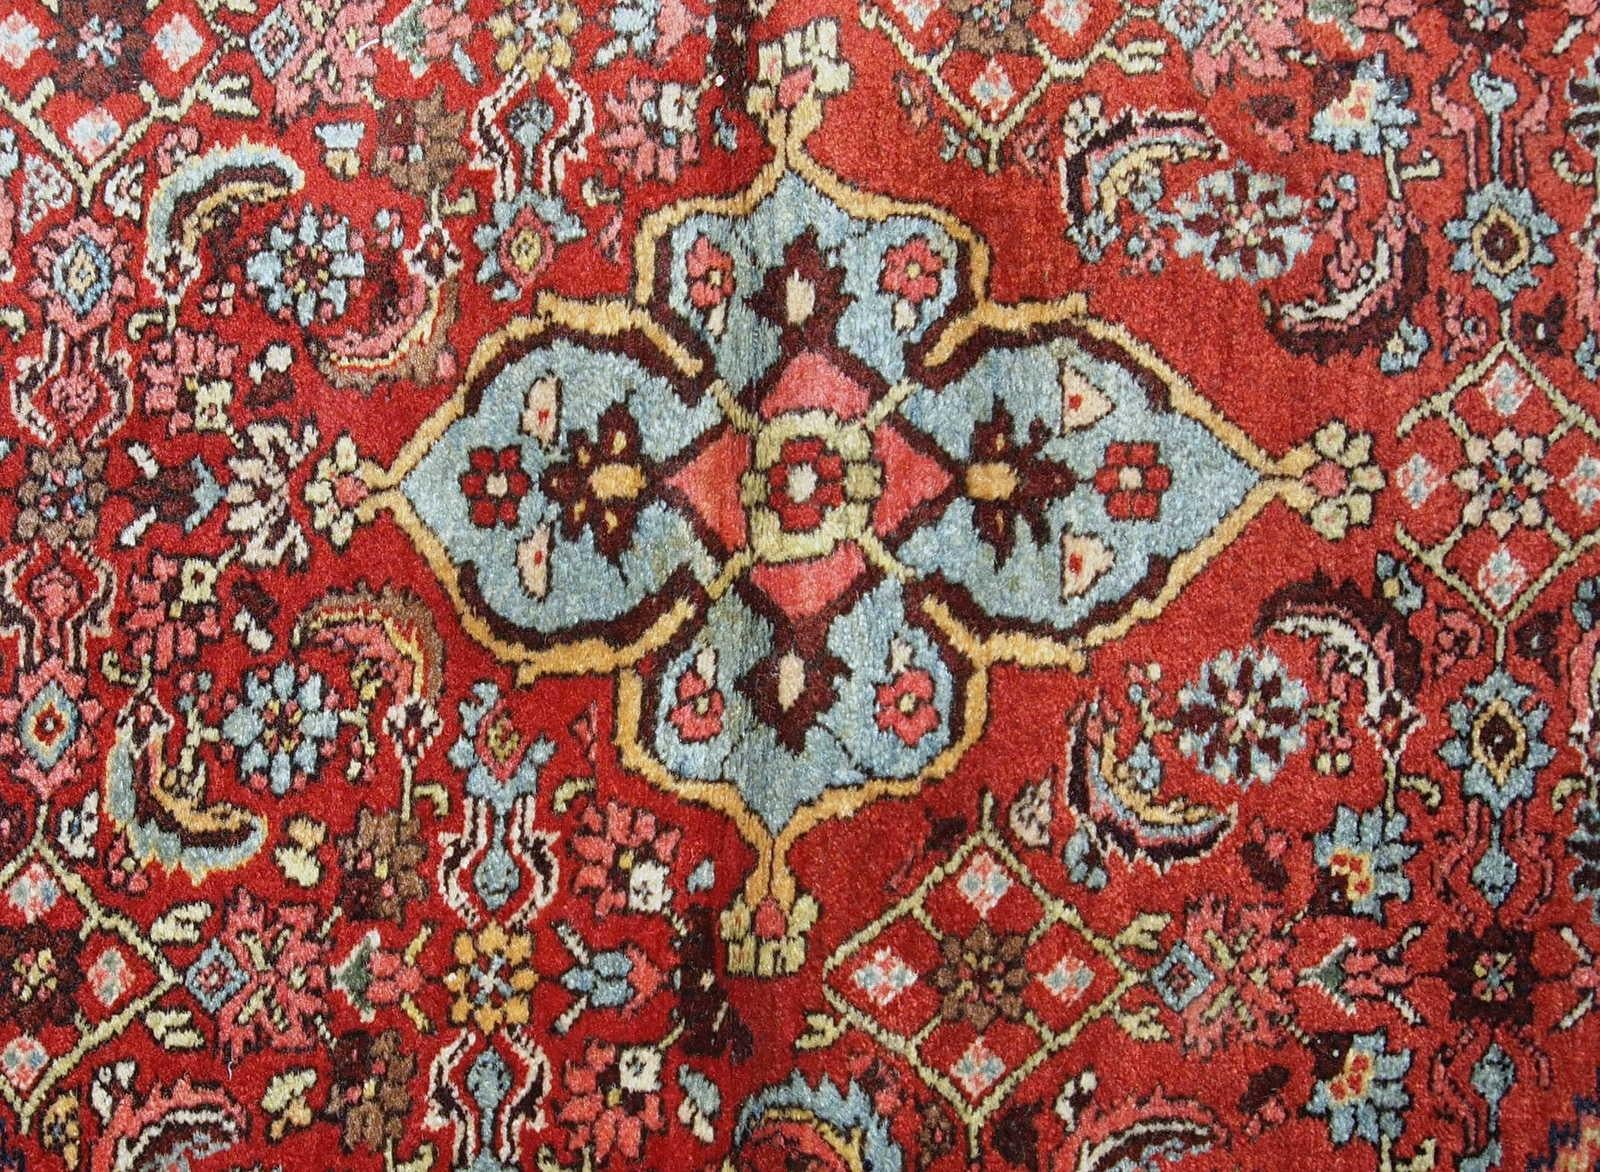 Handgefertigter antiker Bidjar-Teppich vom Anfang des 20. Jahrhunderts. Der Teppich ist in gutem Originalzustand und besteht aus roter und blauer Wolle.

?-Zustand: original gut,

-um: 1900,

-größe: 4,5' x 5,6' (137cm x 170cm),

-material: